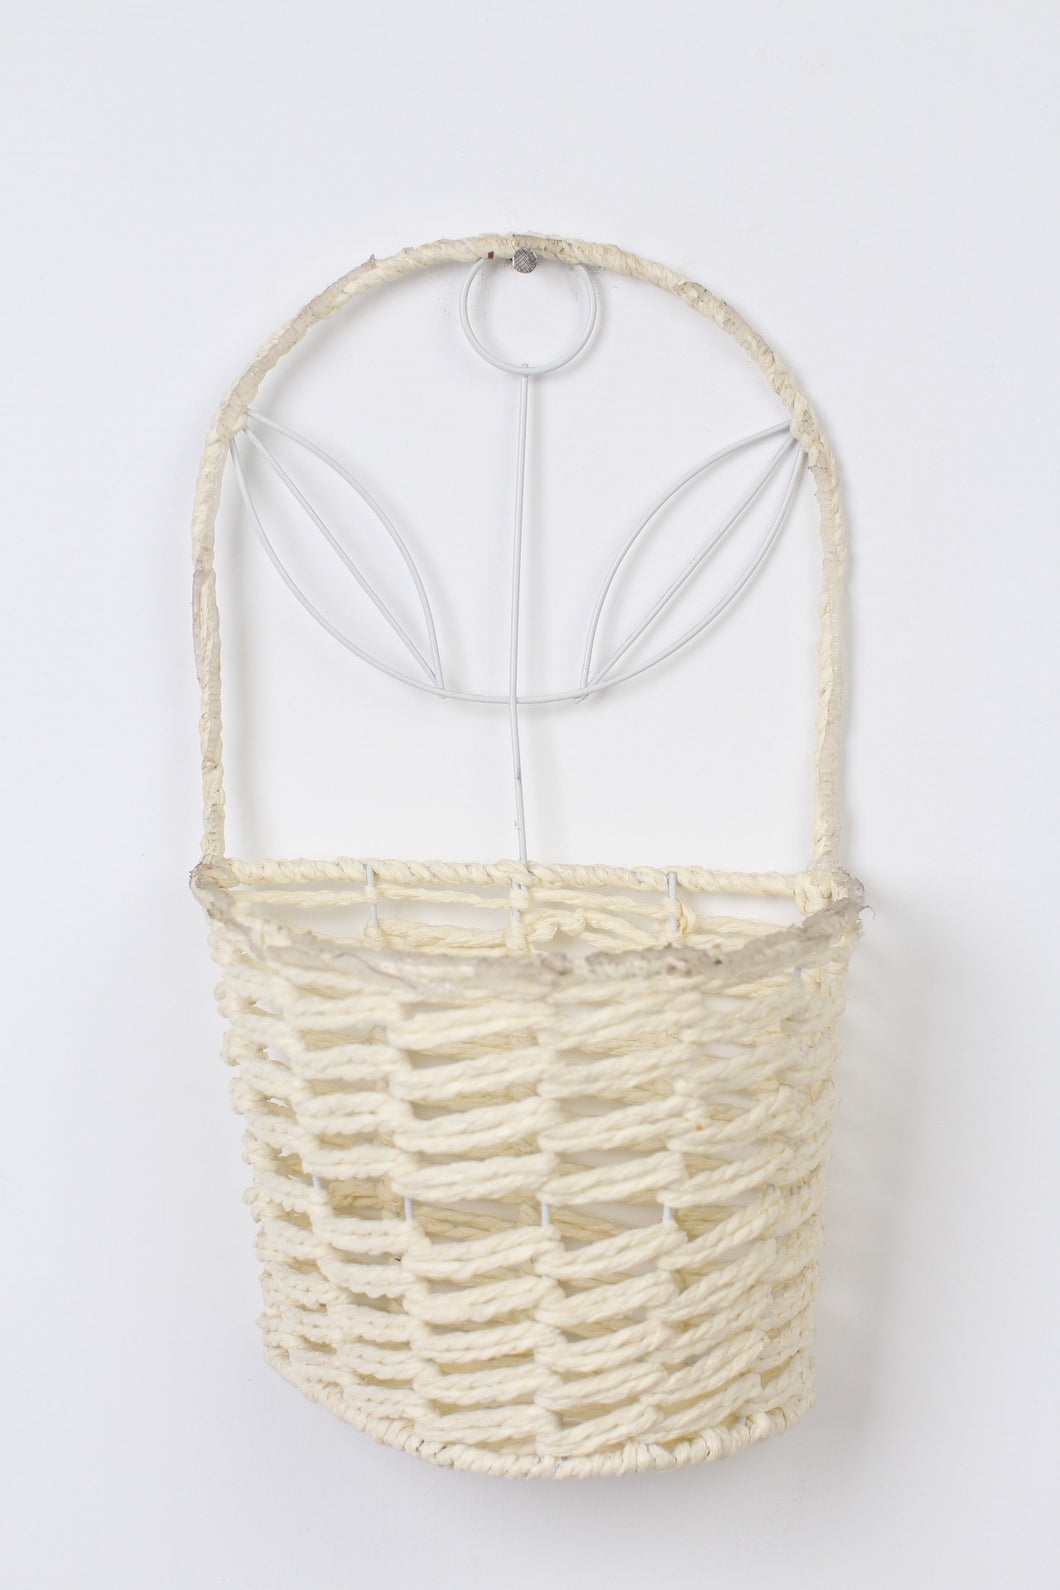 Set of 2 White & Off-White Metal Wall Hanging Weaved Basket 6